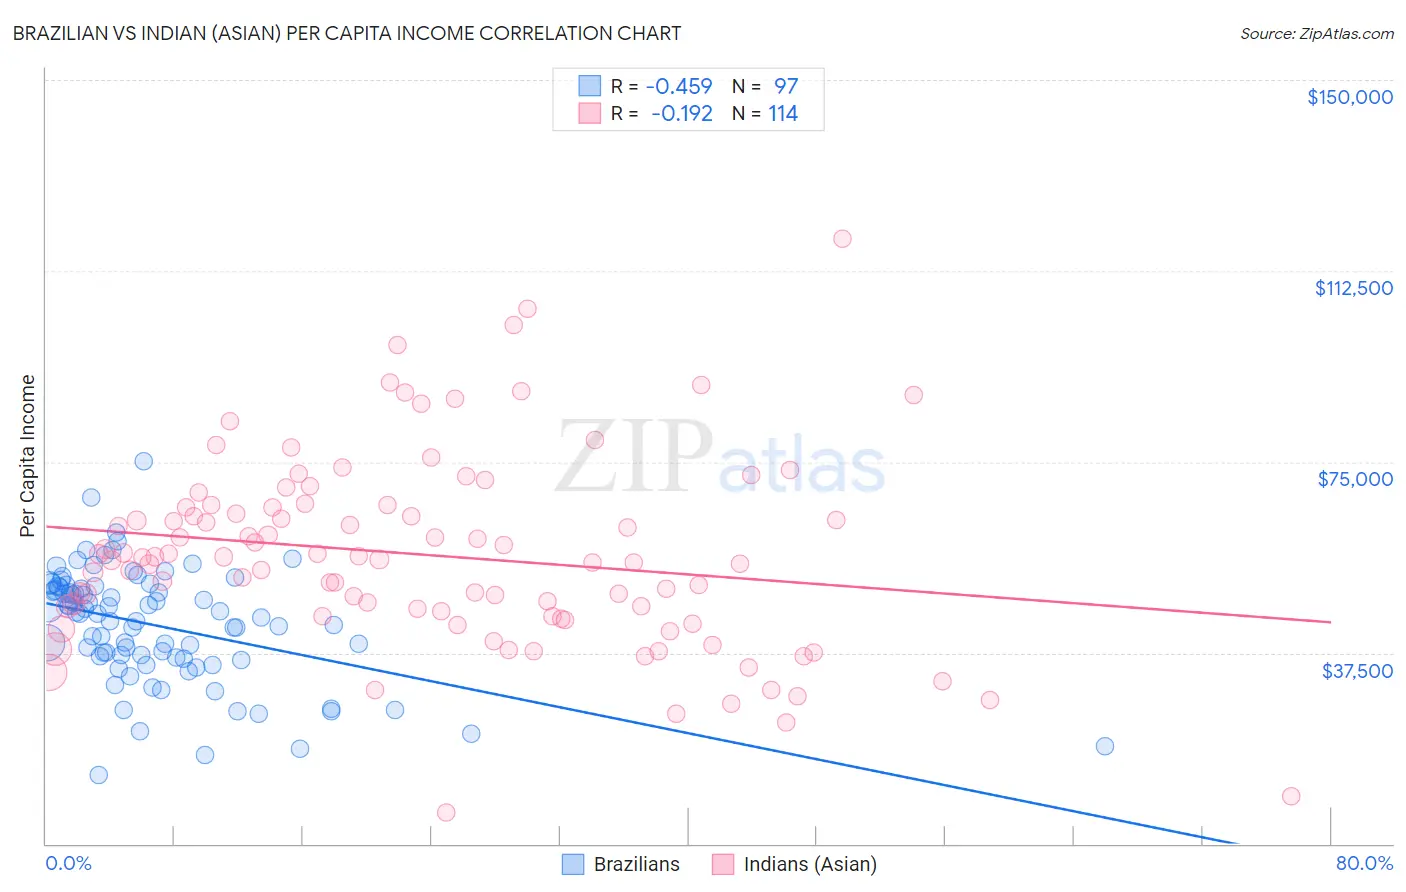 Brazilian vs Indian (Asian) Per Capita Income